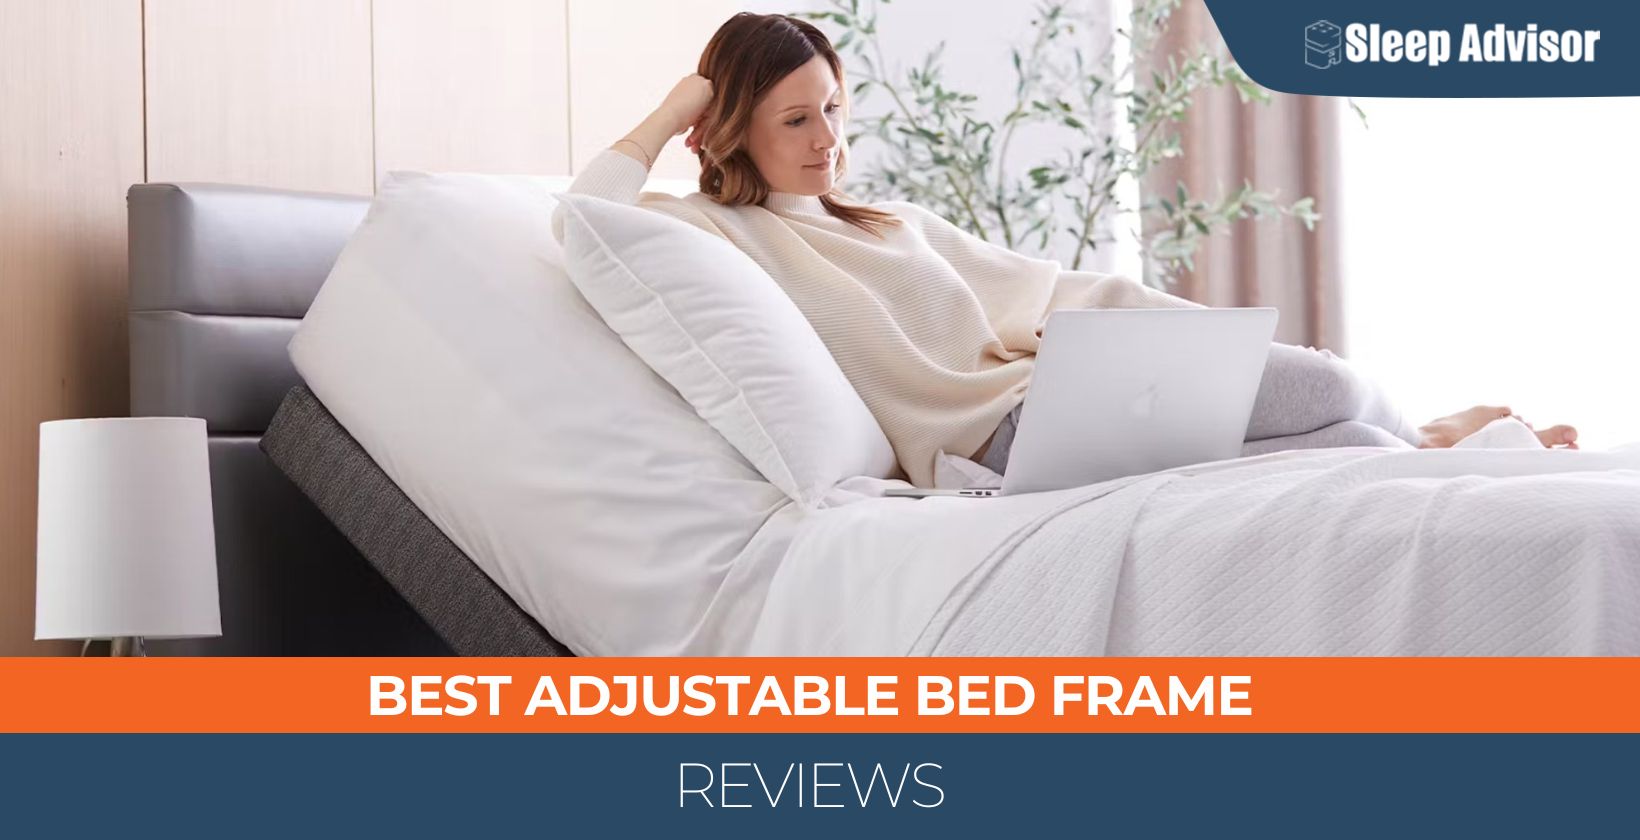 Best Adjustable Bed Frame Reviews – Top 6 Picks